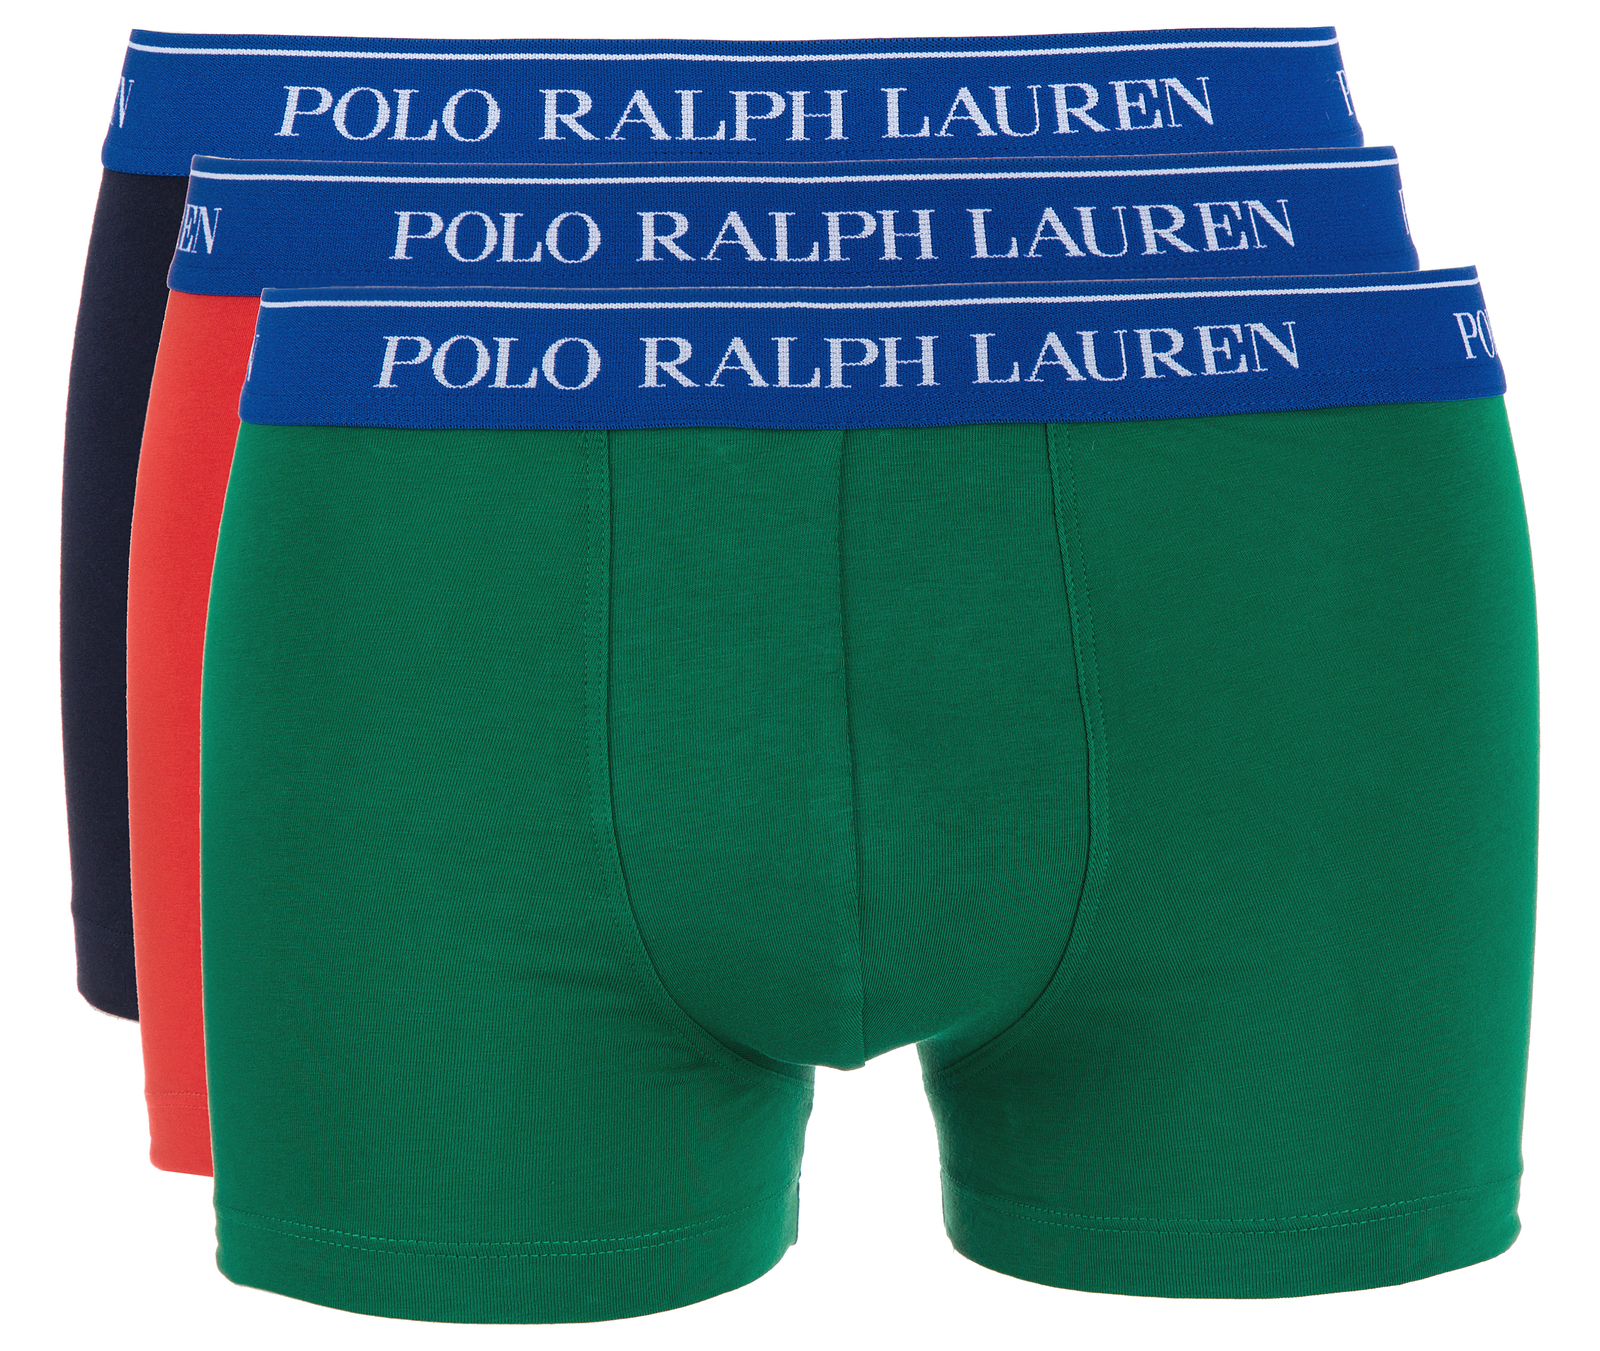 Polo Ralph Lauren 3 db-os Boxeralsó szett M, Kék Zöld Piros fotója